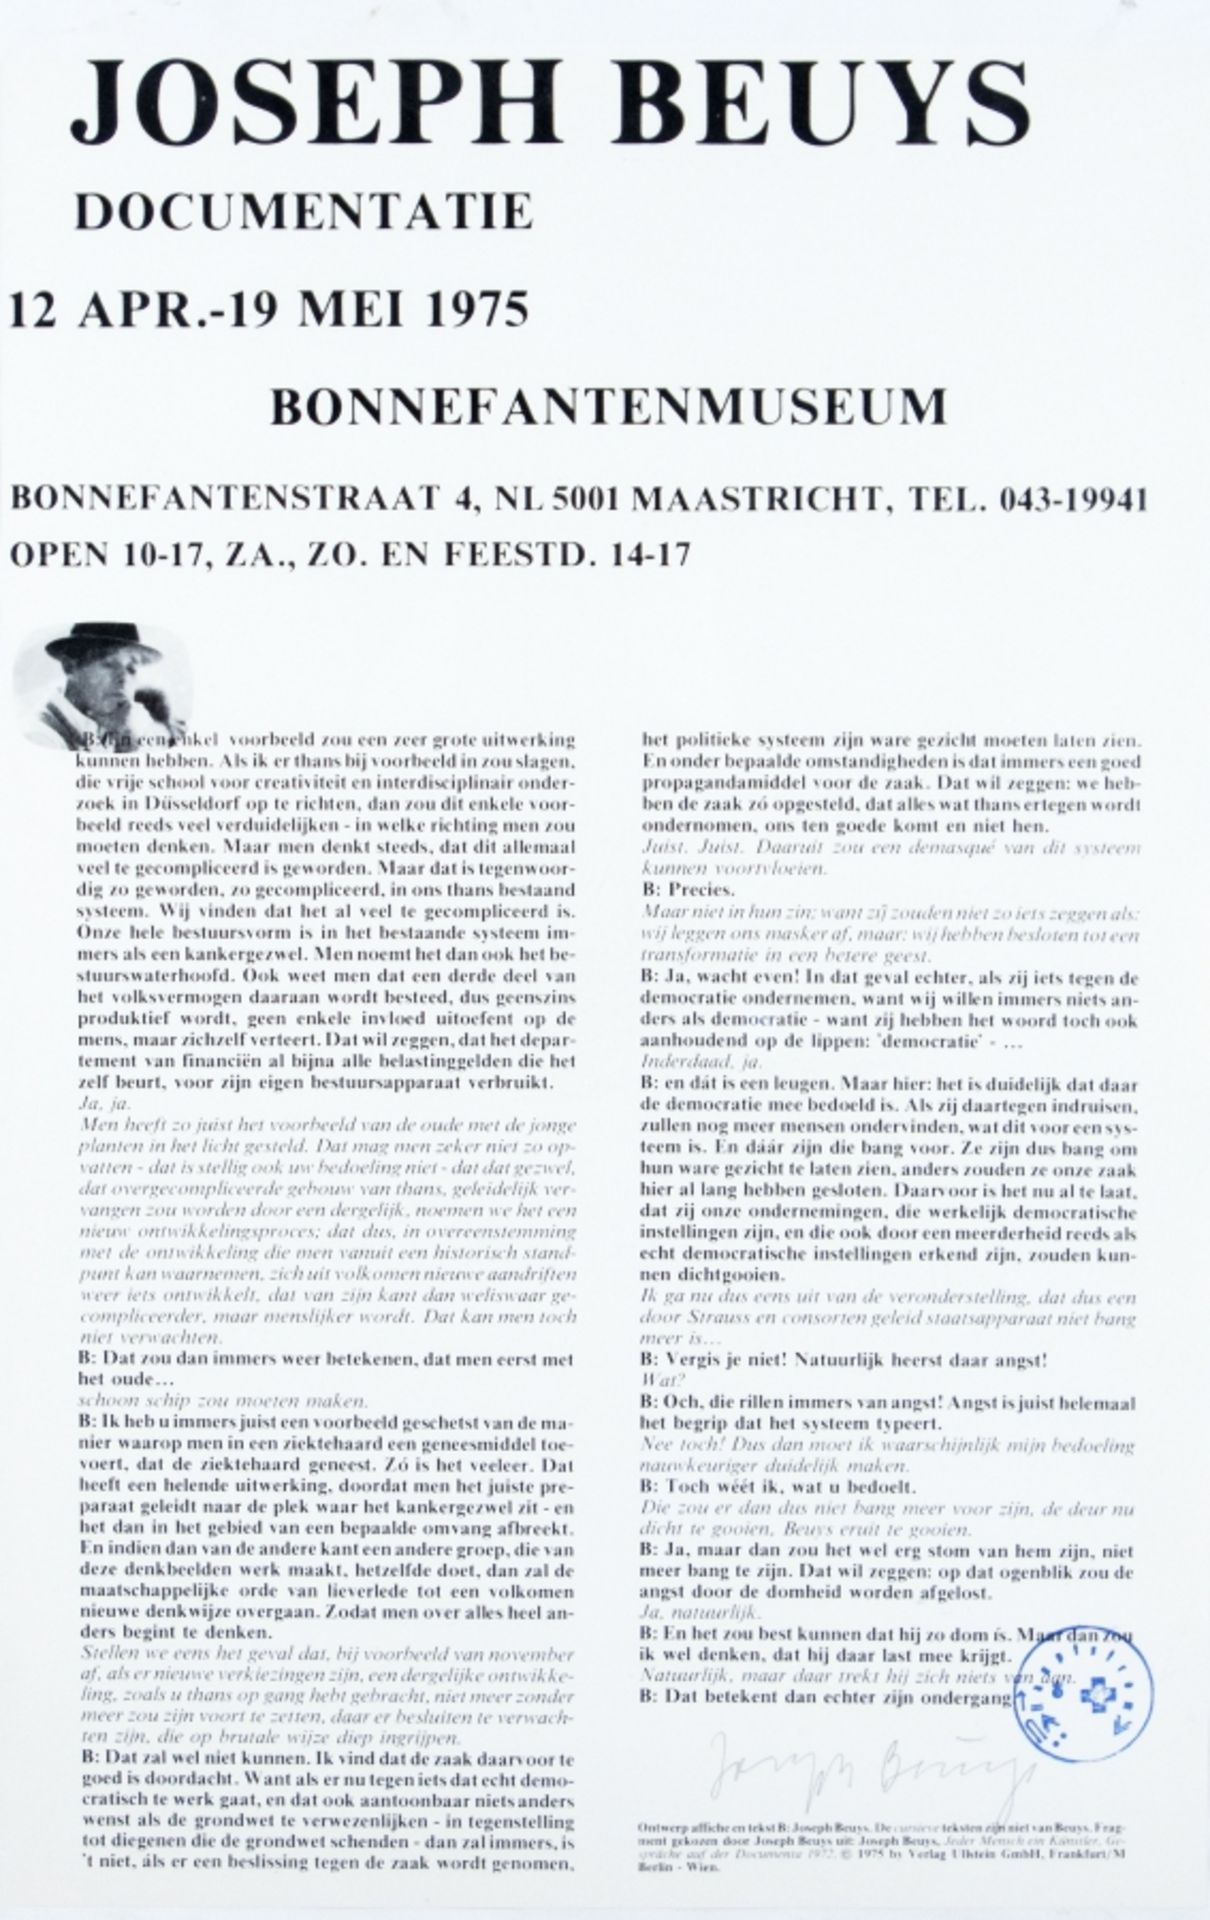 Joseph Beuys1921 Kleve - 1986 DüsseldorfDocumentatie 1975 BonnefantenmuseumOffset auf P